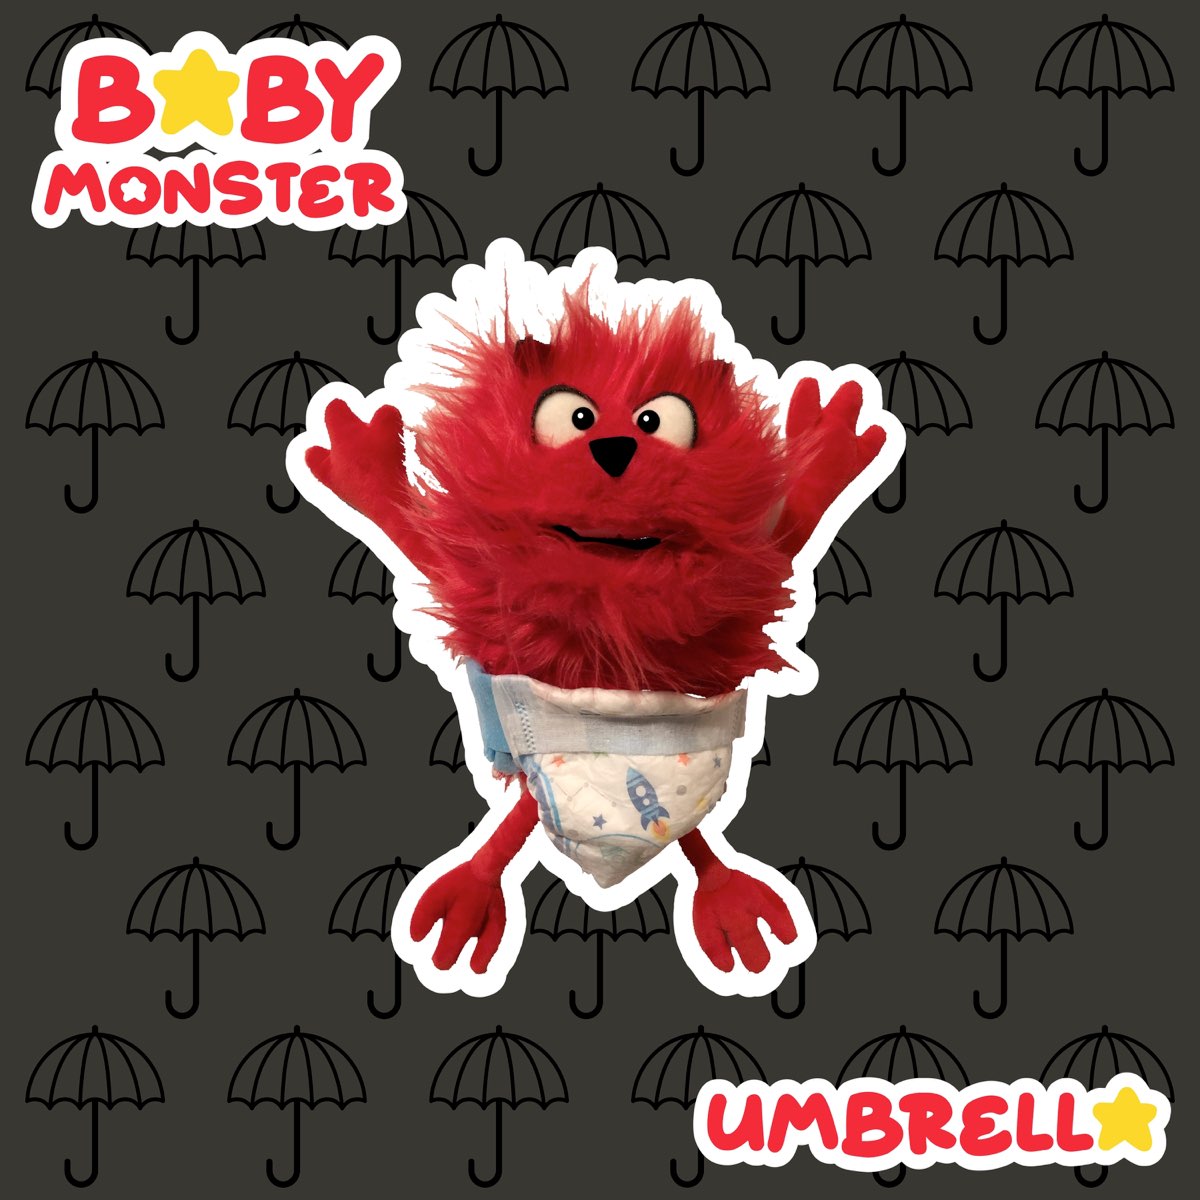 Альбом baby monster. Baby Monster альбом. Baby Monster танец. Беби монстр песни.